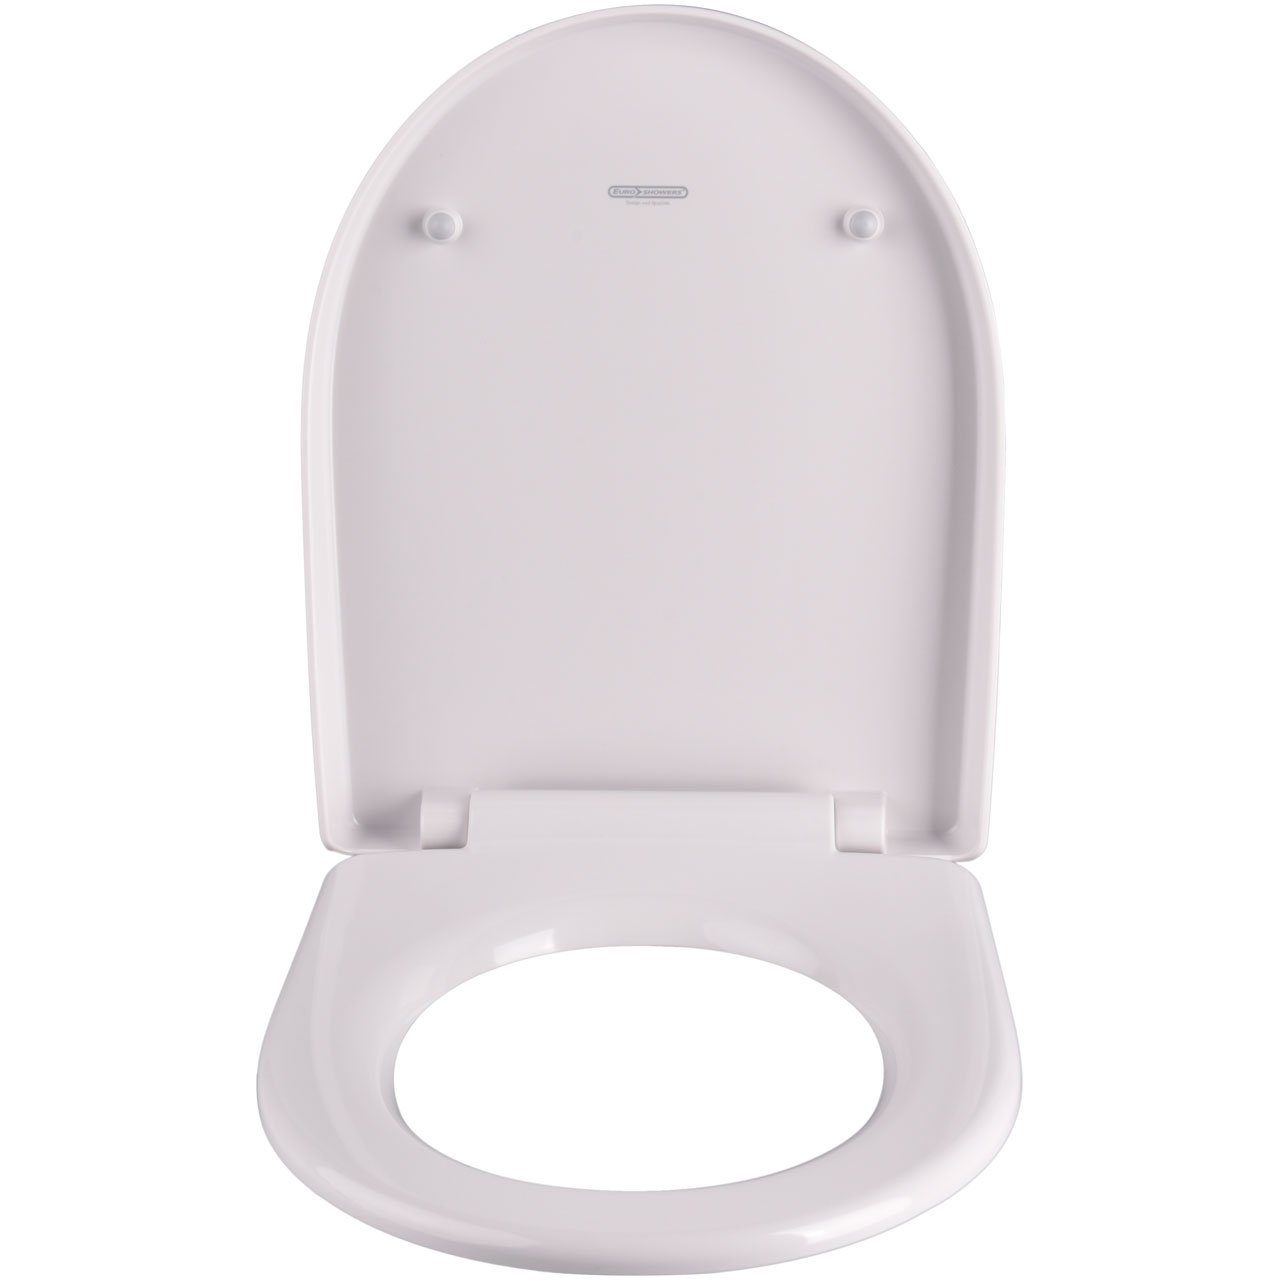 Euroshowers GmbH WC-Sitz »WC-Sitz Premium Toilettendeckel antibakteriell  weiß. Klodeckel mit Quick-Release-Funktion und Softclose Absenkautomatik.  Passend für z.B. Connect und ähnliche Formen«